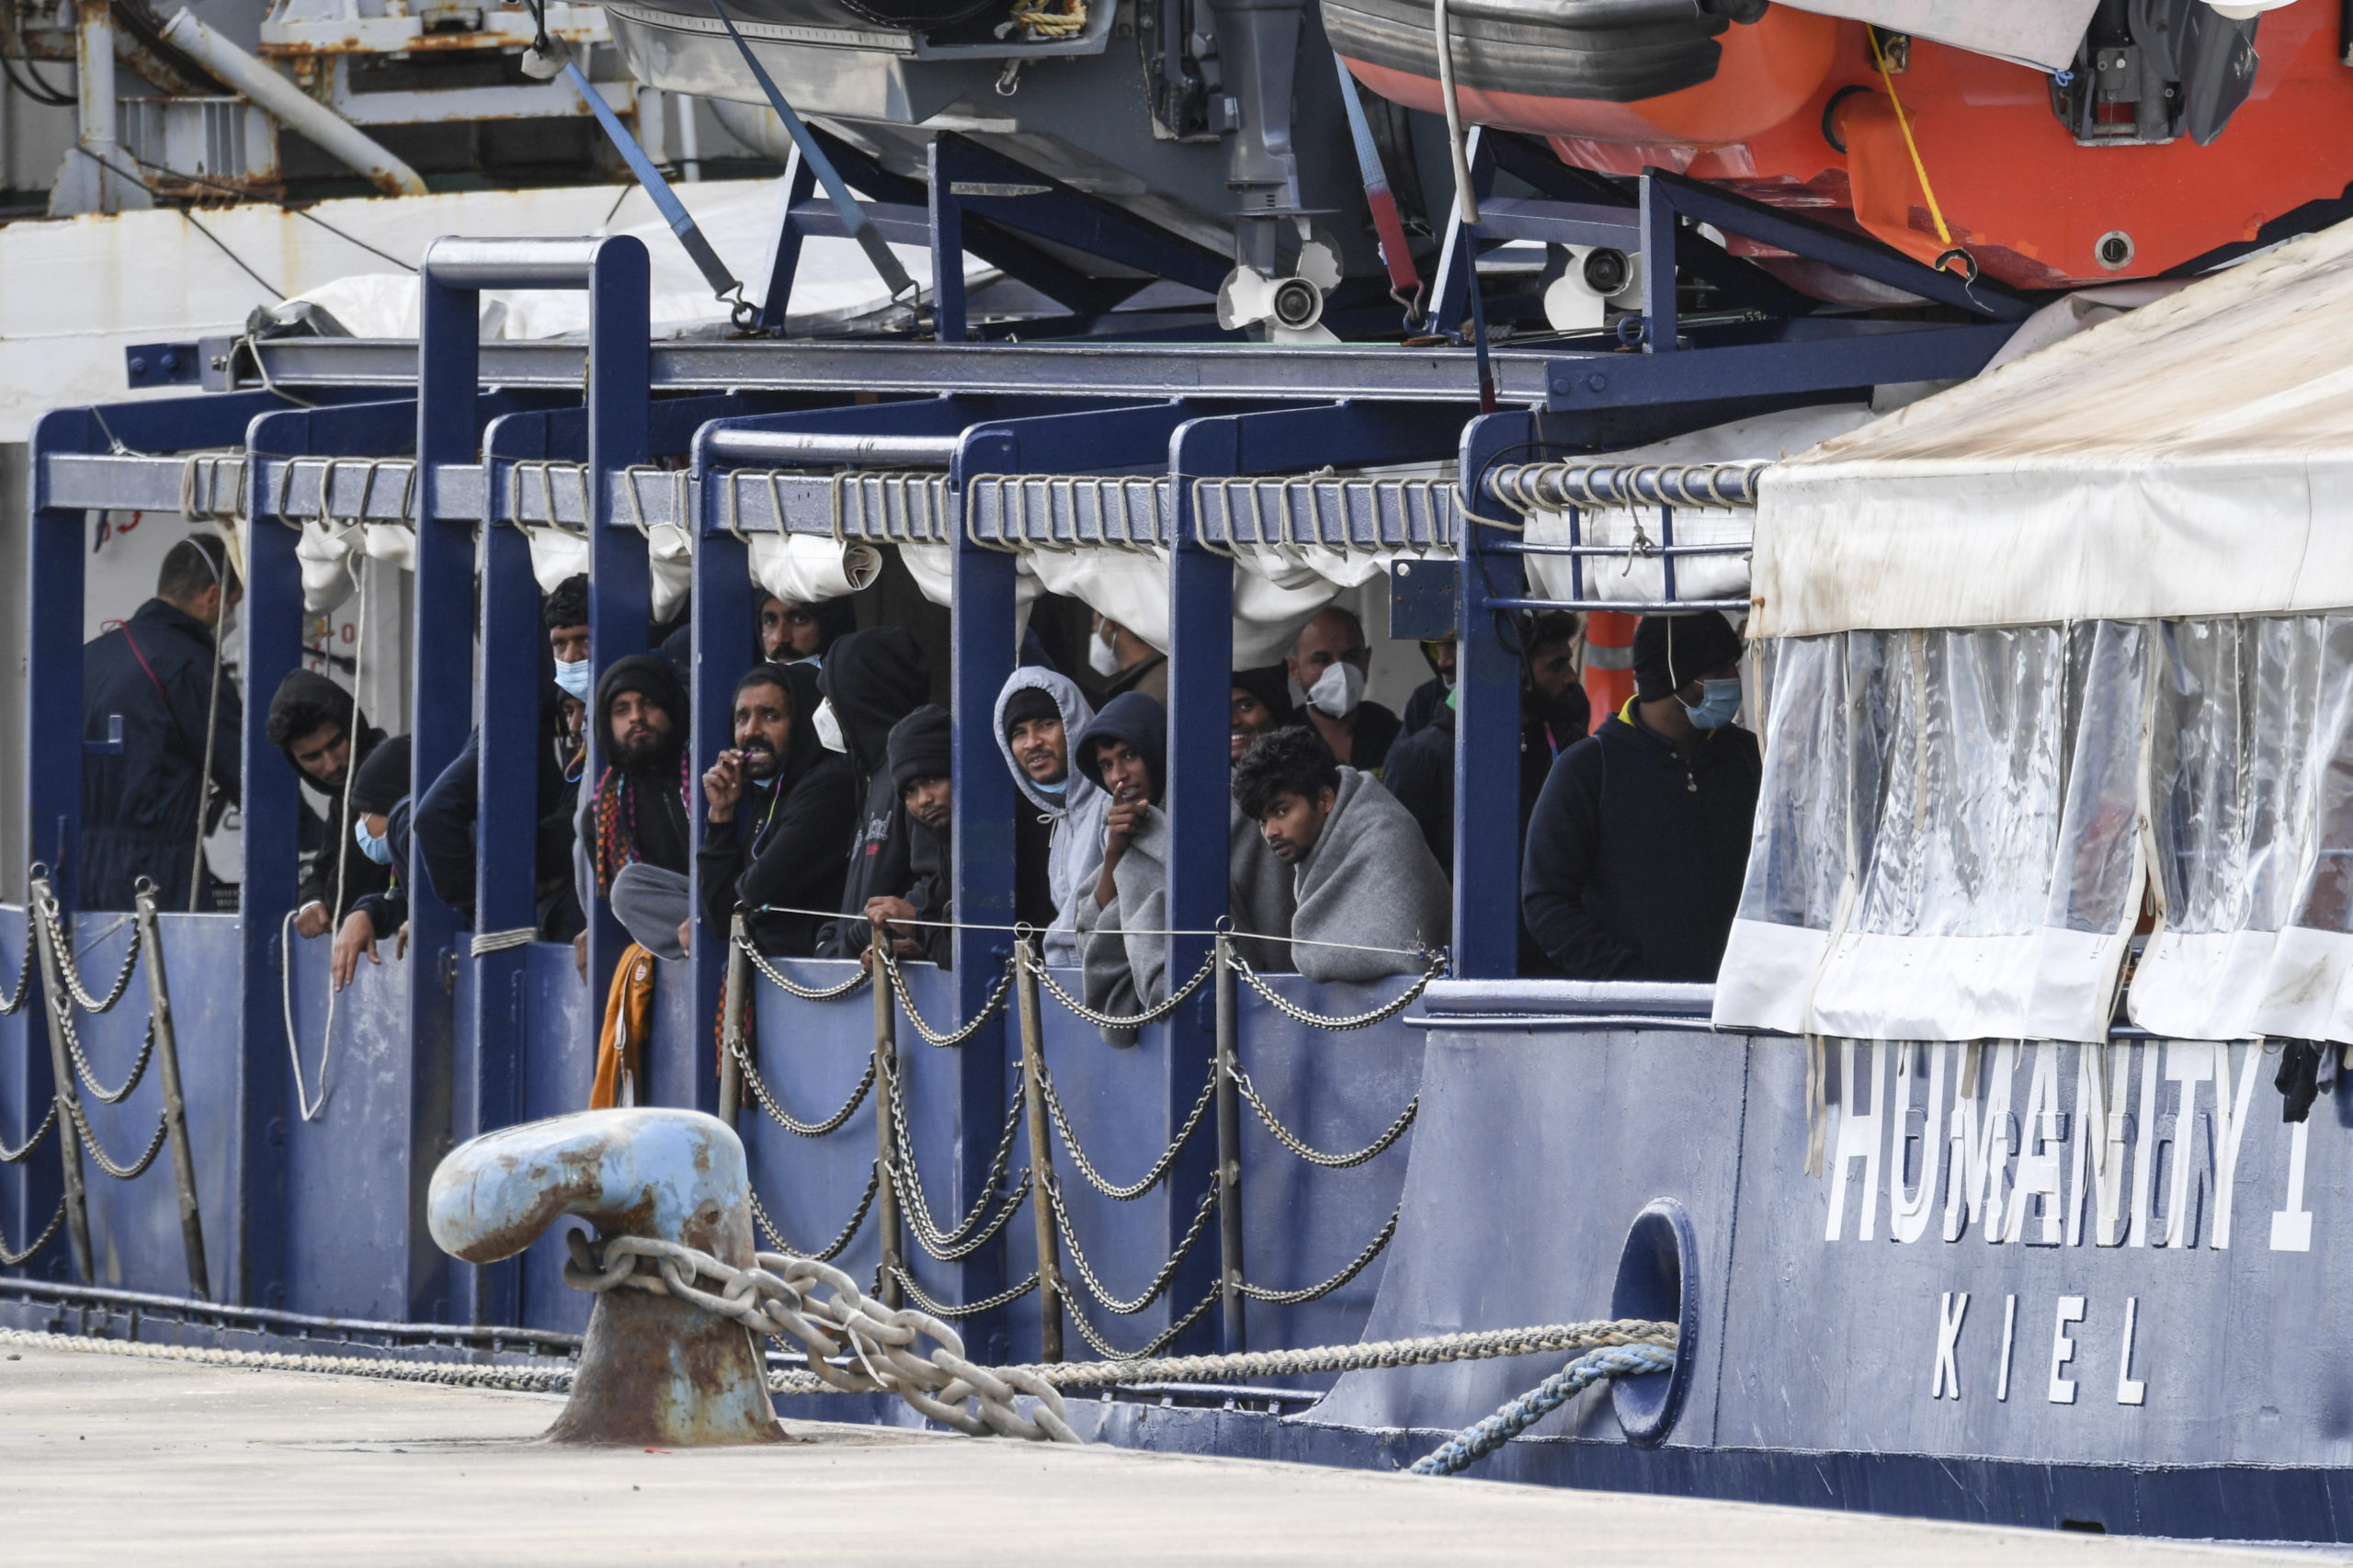 Περισσότεροι από 500 μετανάστες, αποβιβάστηκαν από πλοία ΜΚΟ σε λιμάνια της Ιταλίας